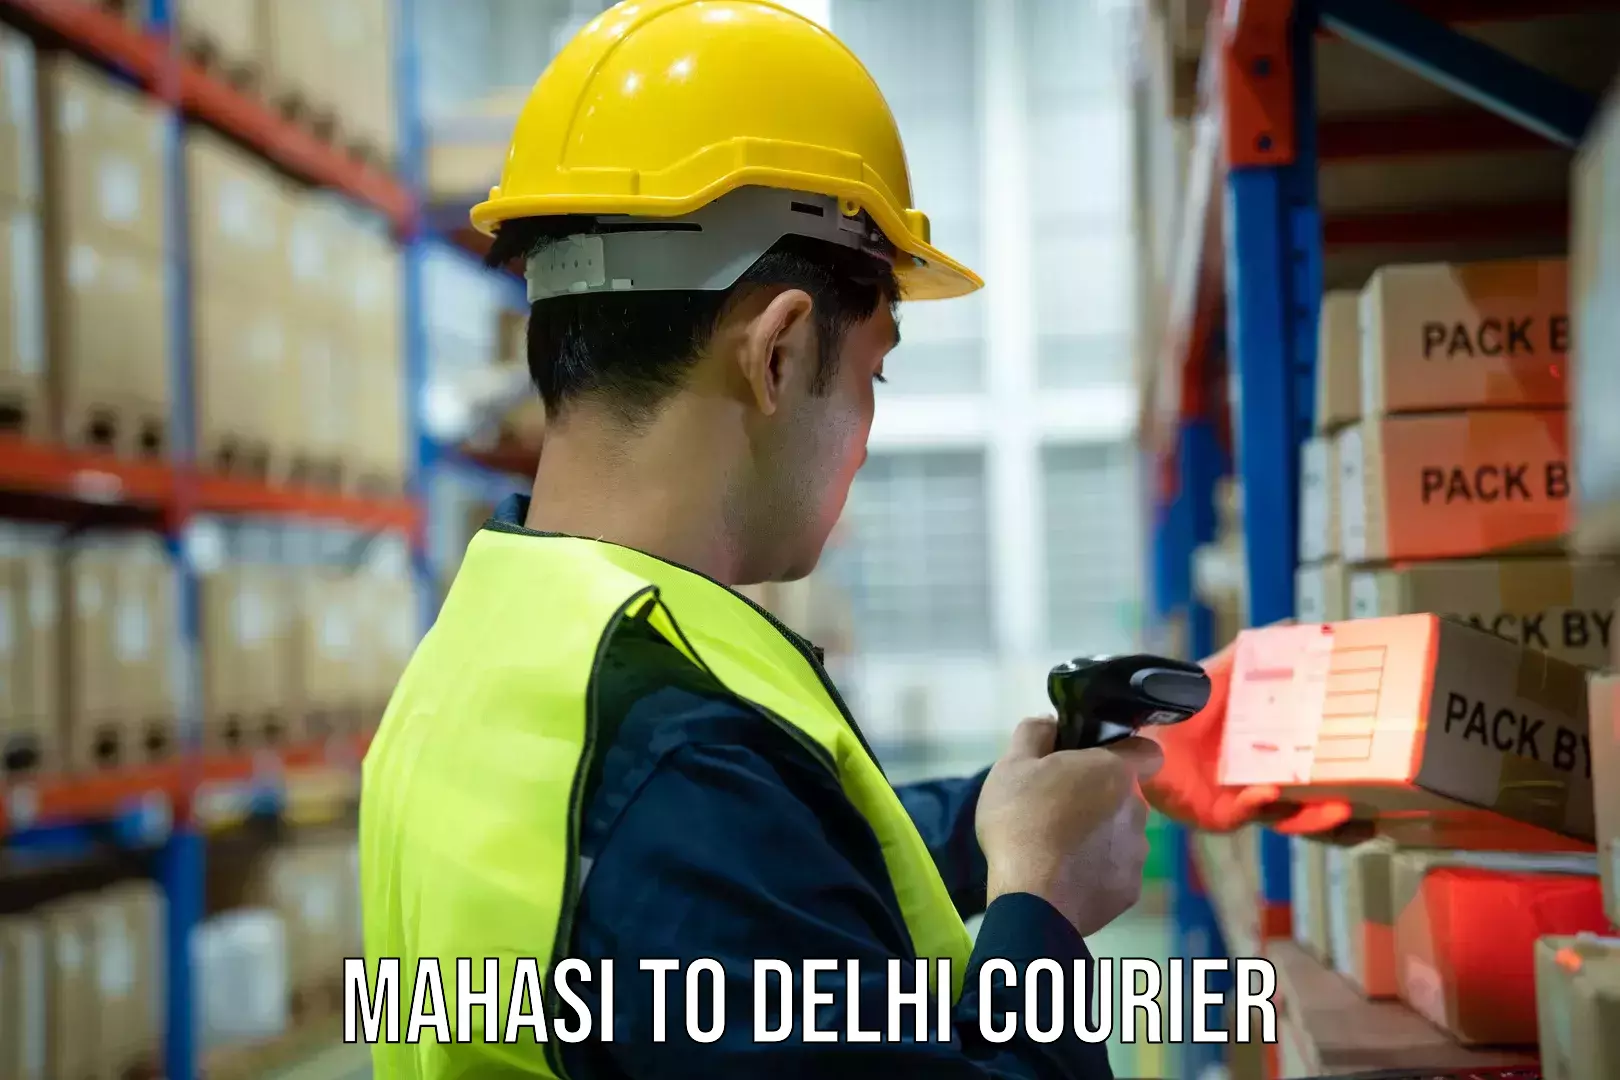 High-capacity parcel service Mahasi to Jamia Millia Islamia New Delhi